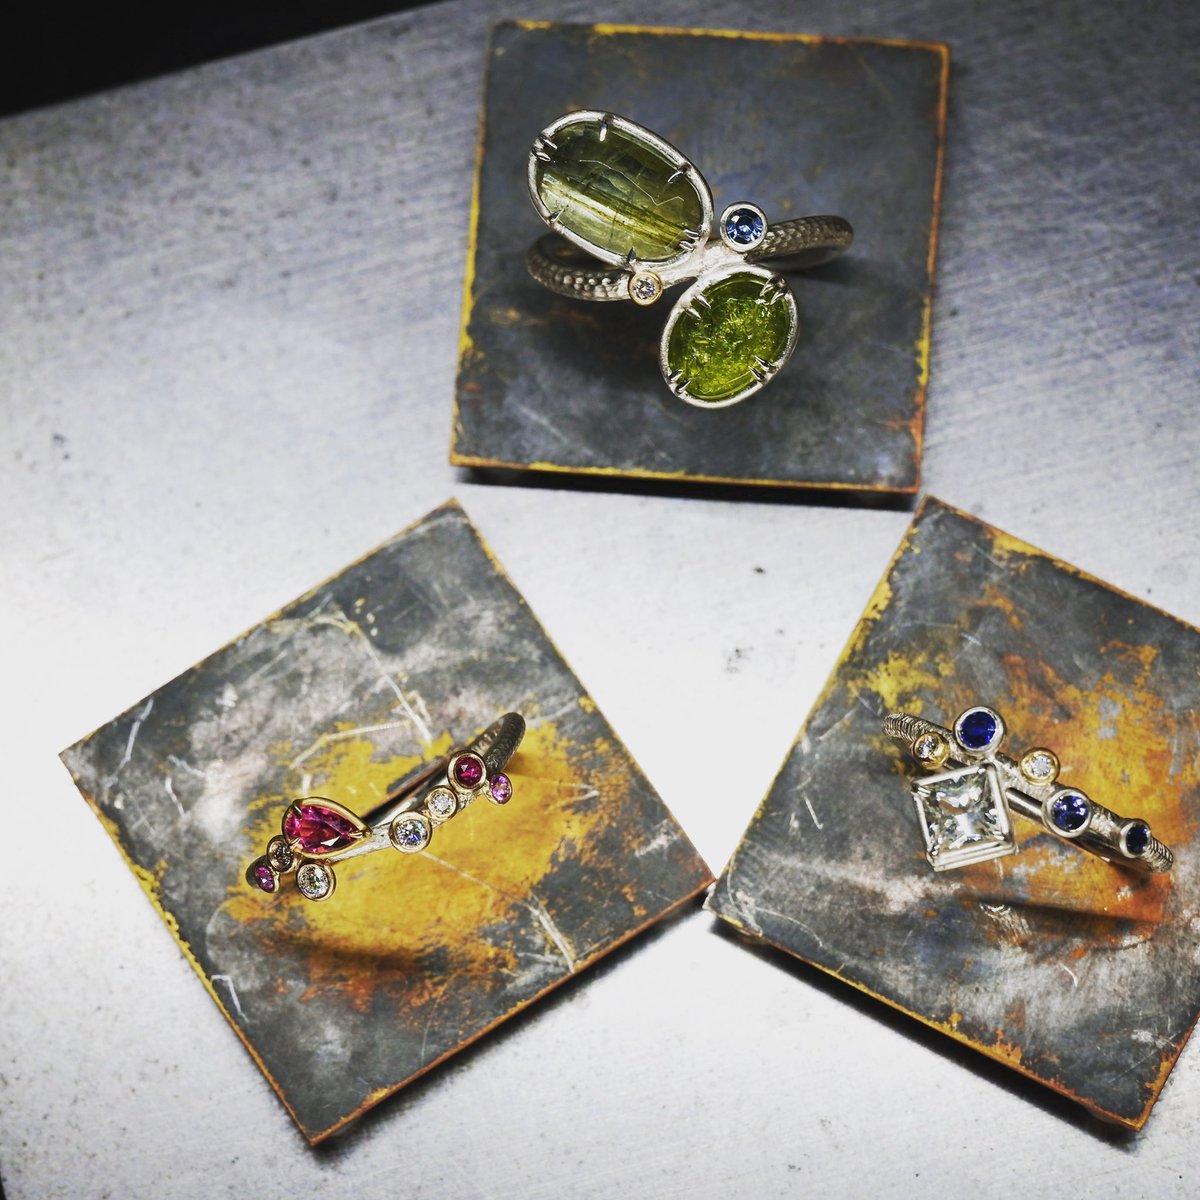 new rings of this summer 

rain of fresh greens 
-青梅雨-
ao-tsuyu 

midsummer stars 
-星涼し-
hoshi-suzusi 

Antares
-旱星-
hideriboshi 

2023.7.19-25
阪急うめだ本店スーク10階・中央街区1-4
10:00-20:00

#jewelry
#handmadejewelry 
#artjewellery 
#summerjewelry 
#ring 
#yujiishii